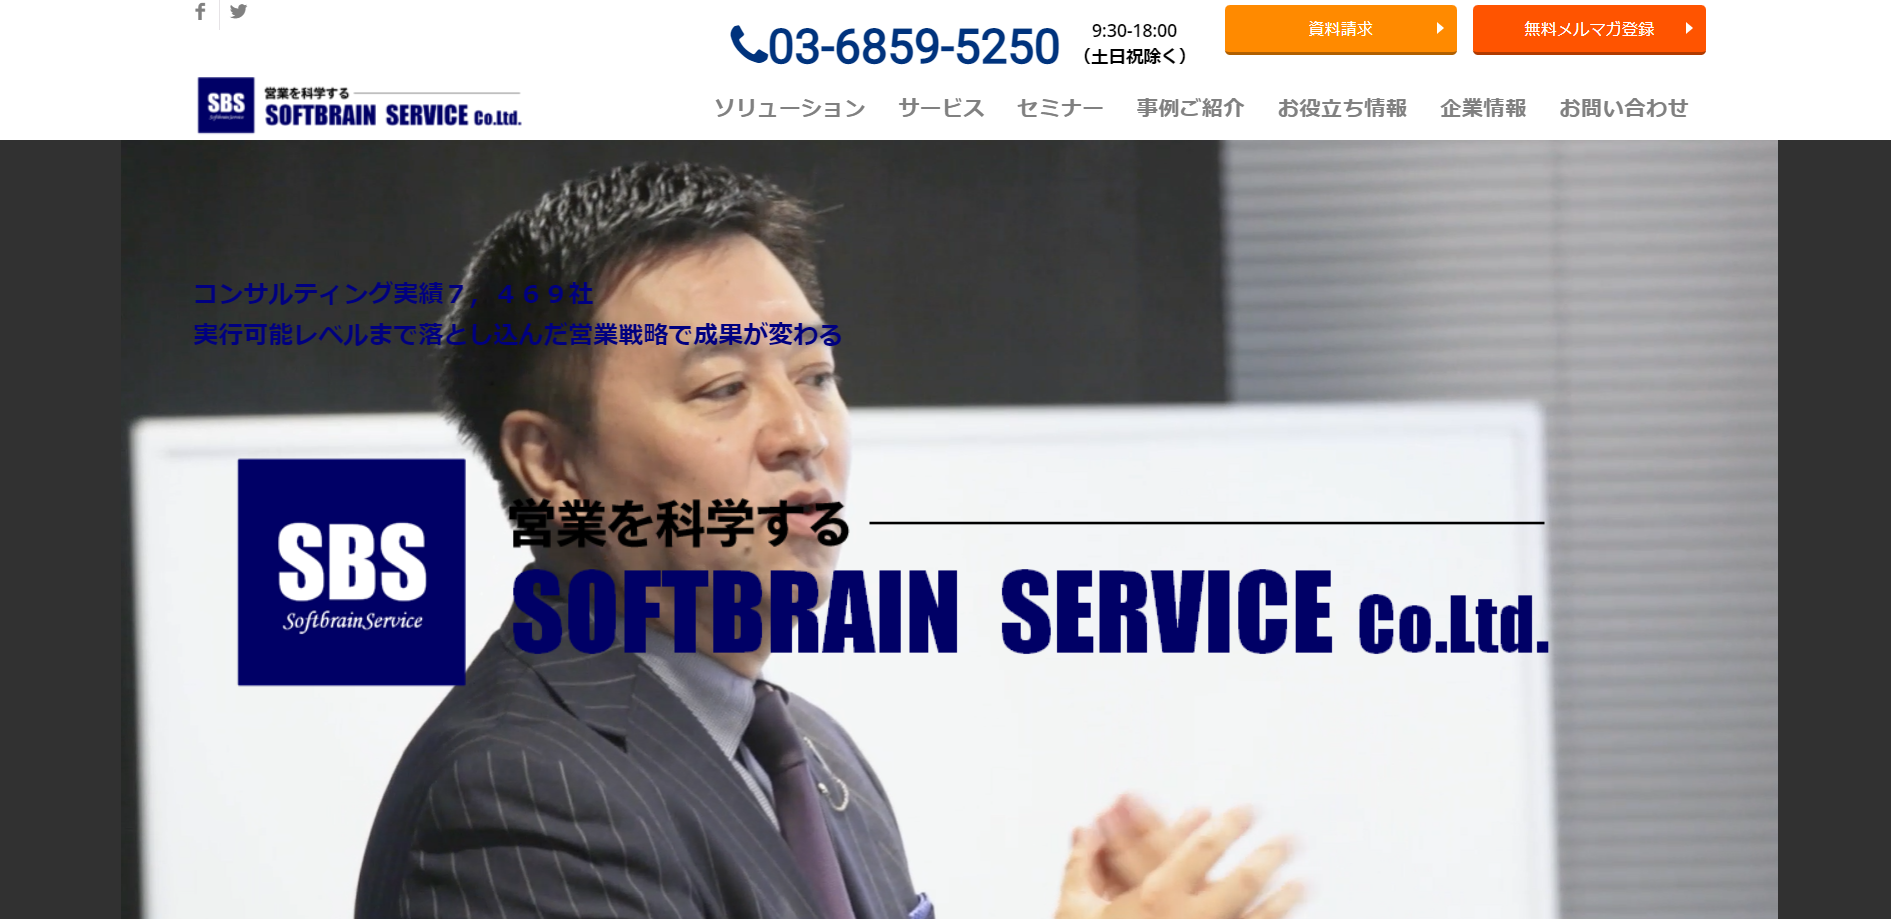 ソフトブレーン・サービス株式会社のソフトブレーン・サービス株式会社:コンサルティングサービス